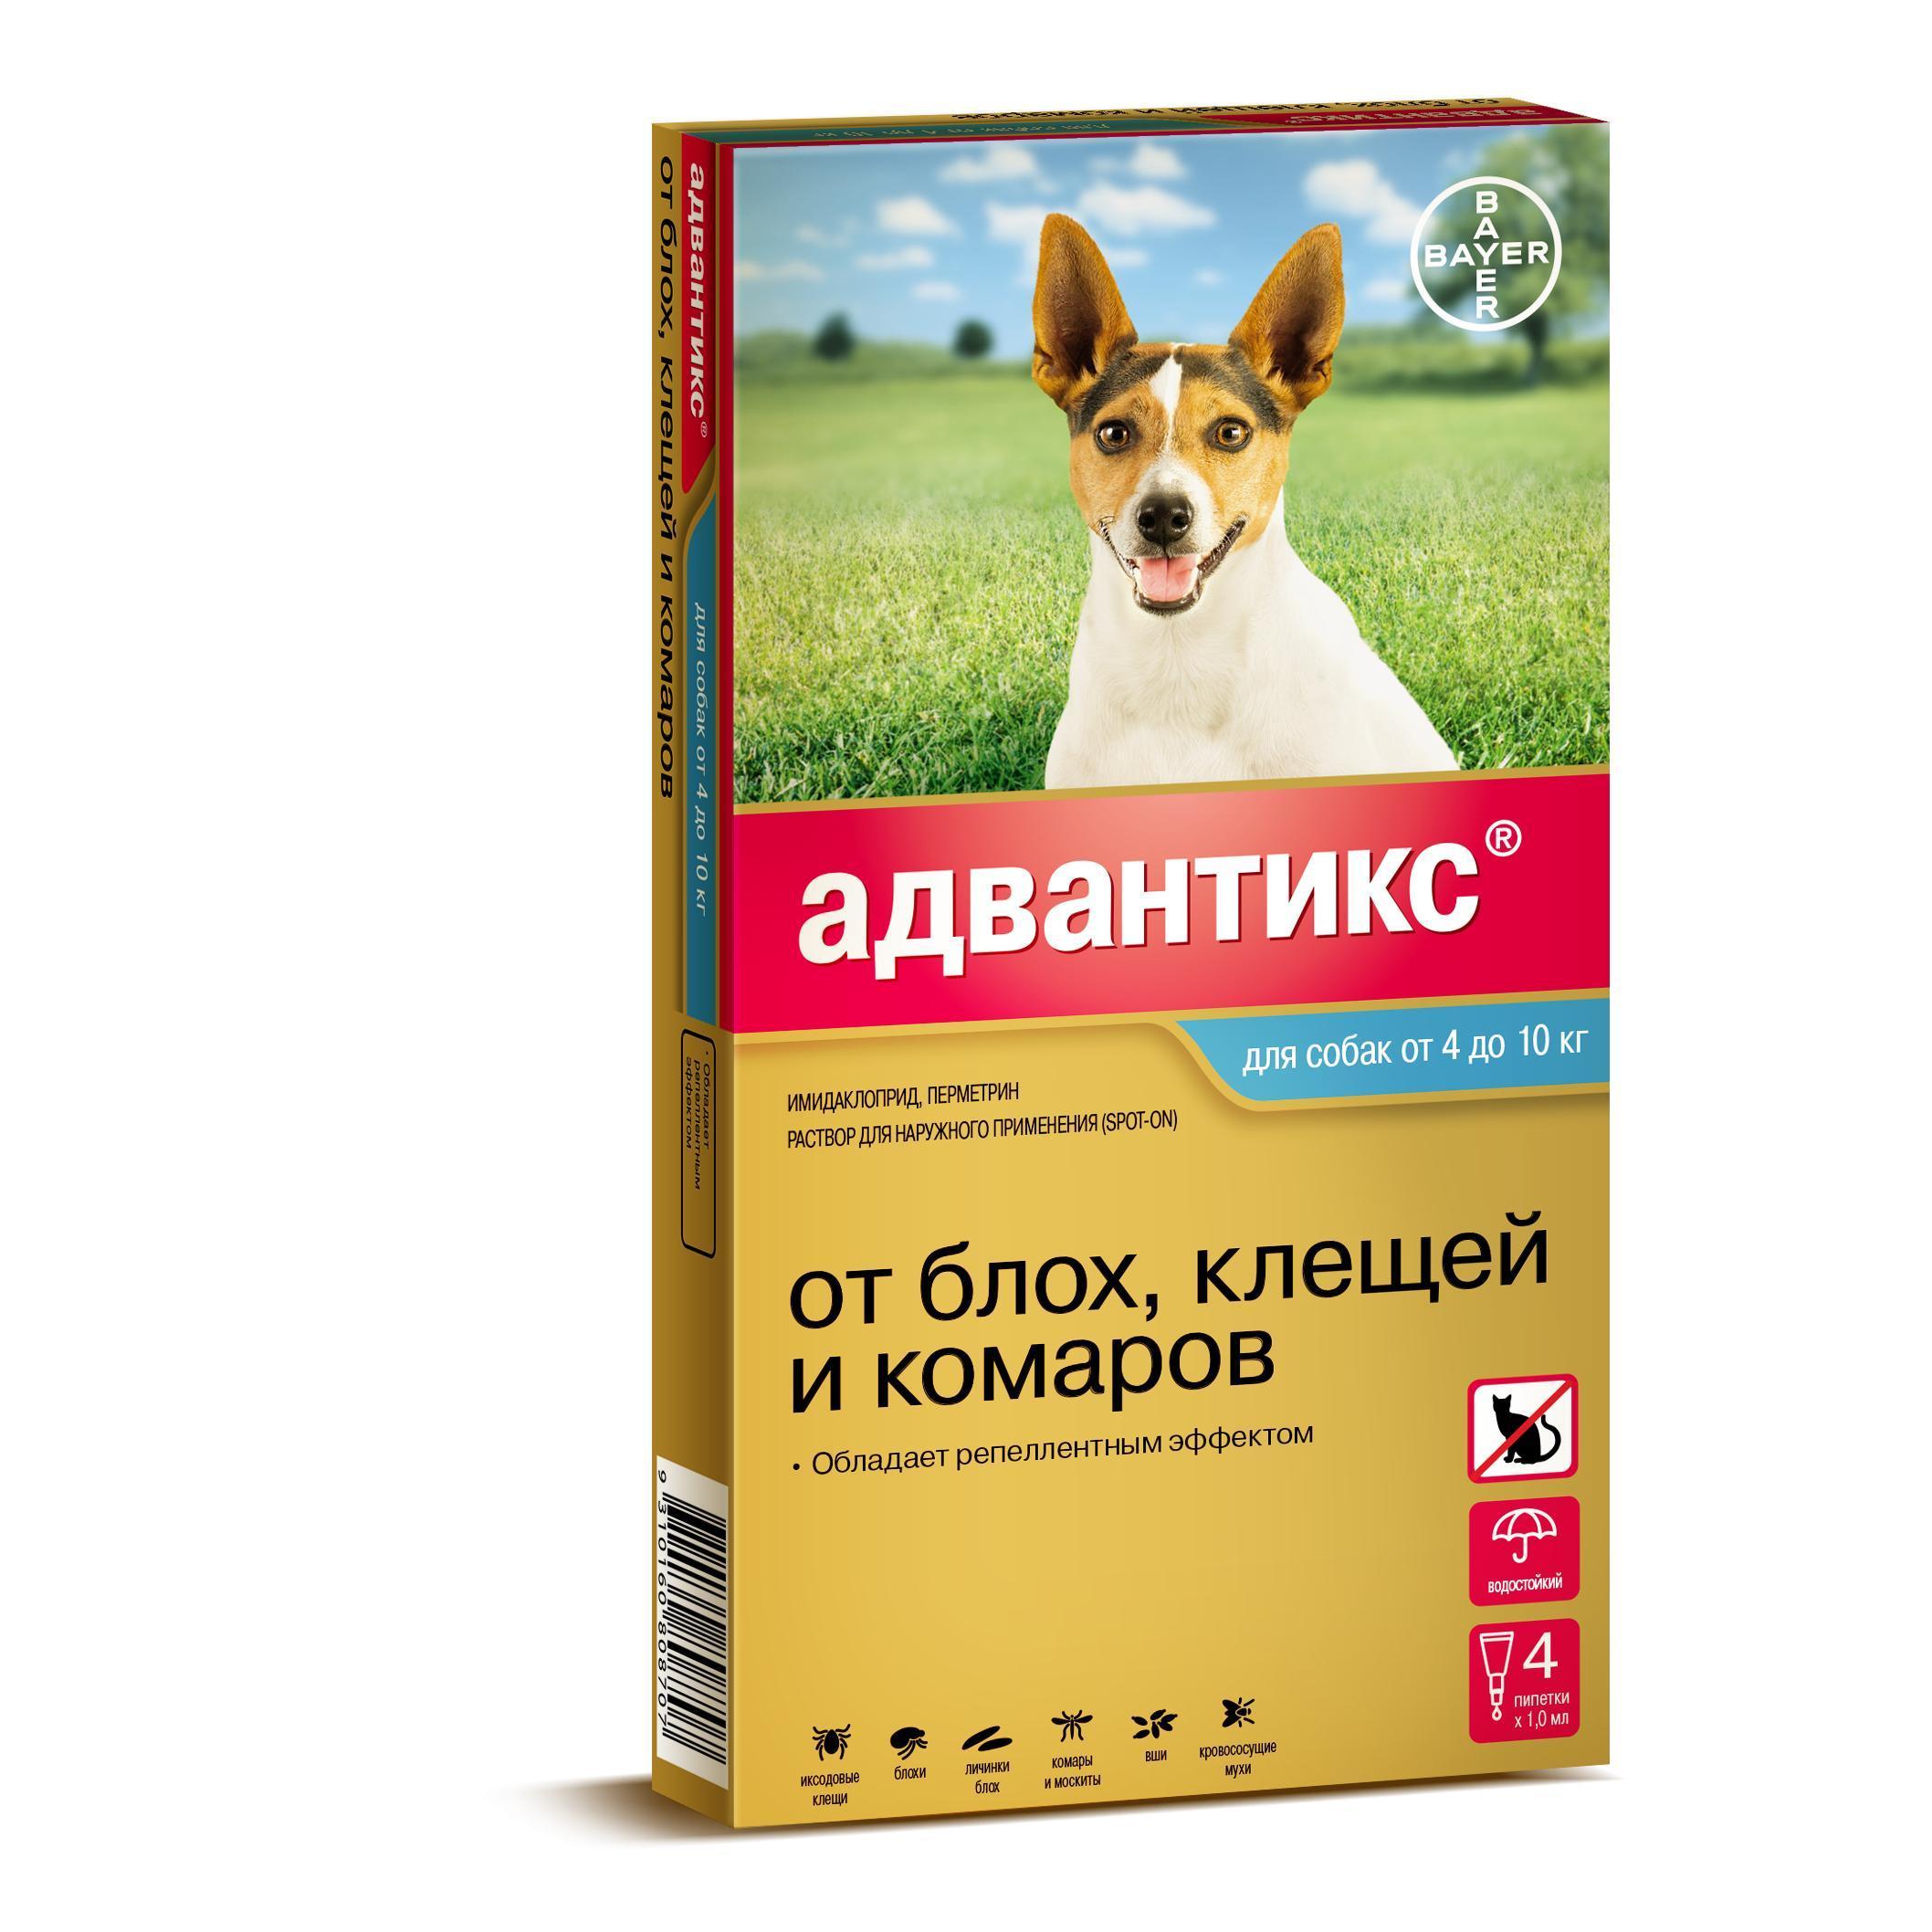 Адвантикс для собак инструкция по применению — капли